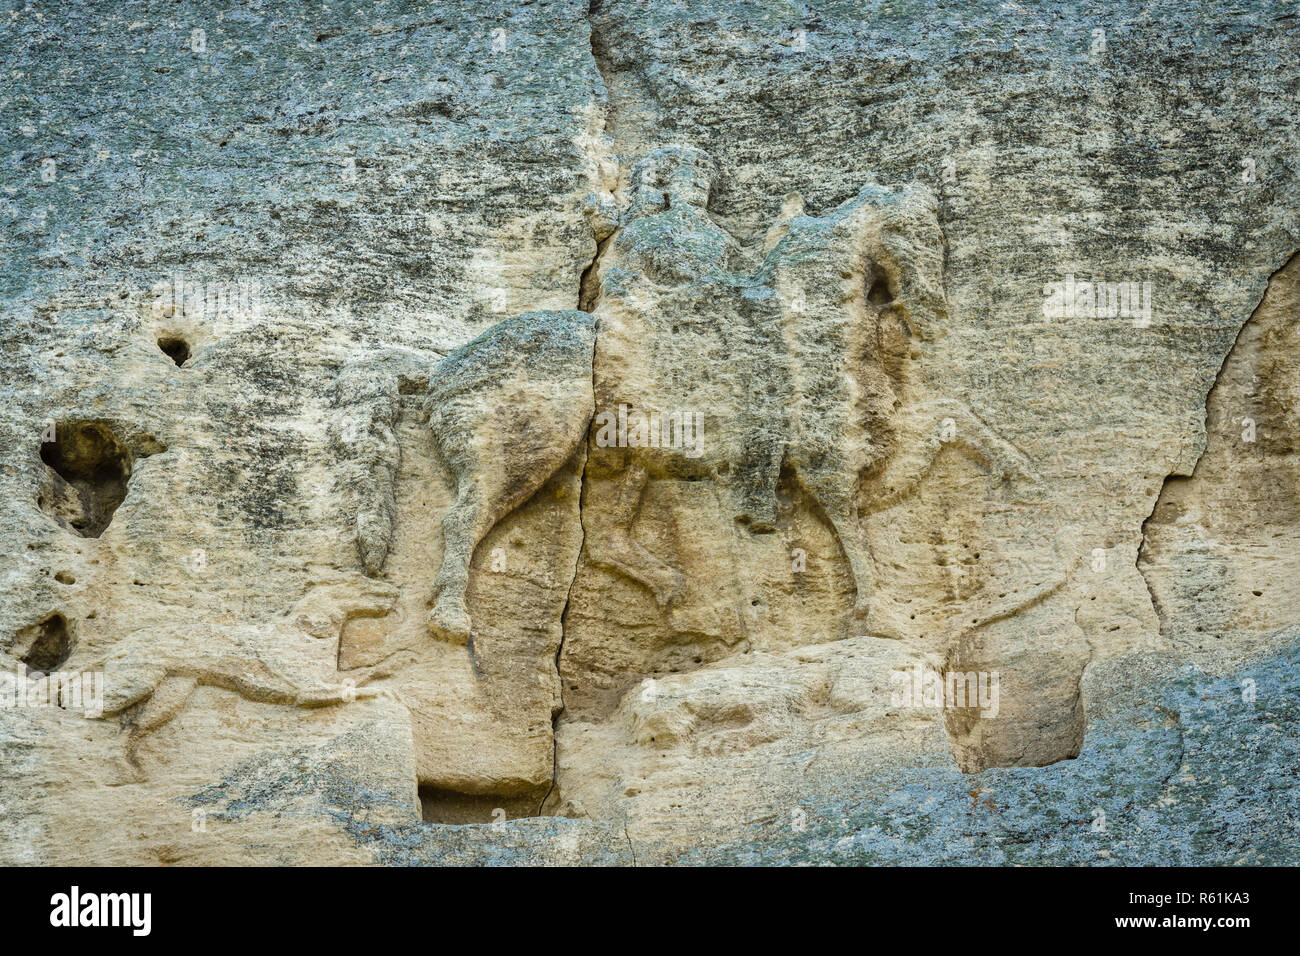 Reiter von Madara - eine archäologische Denkmal des frühen Mittelalters (Ende des 7. Jh.), ein Bild von einem Reiter auf einem steilen Felsen gehauen. Bulgarien. Stockfoto